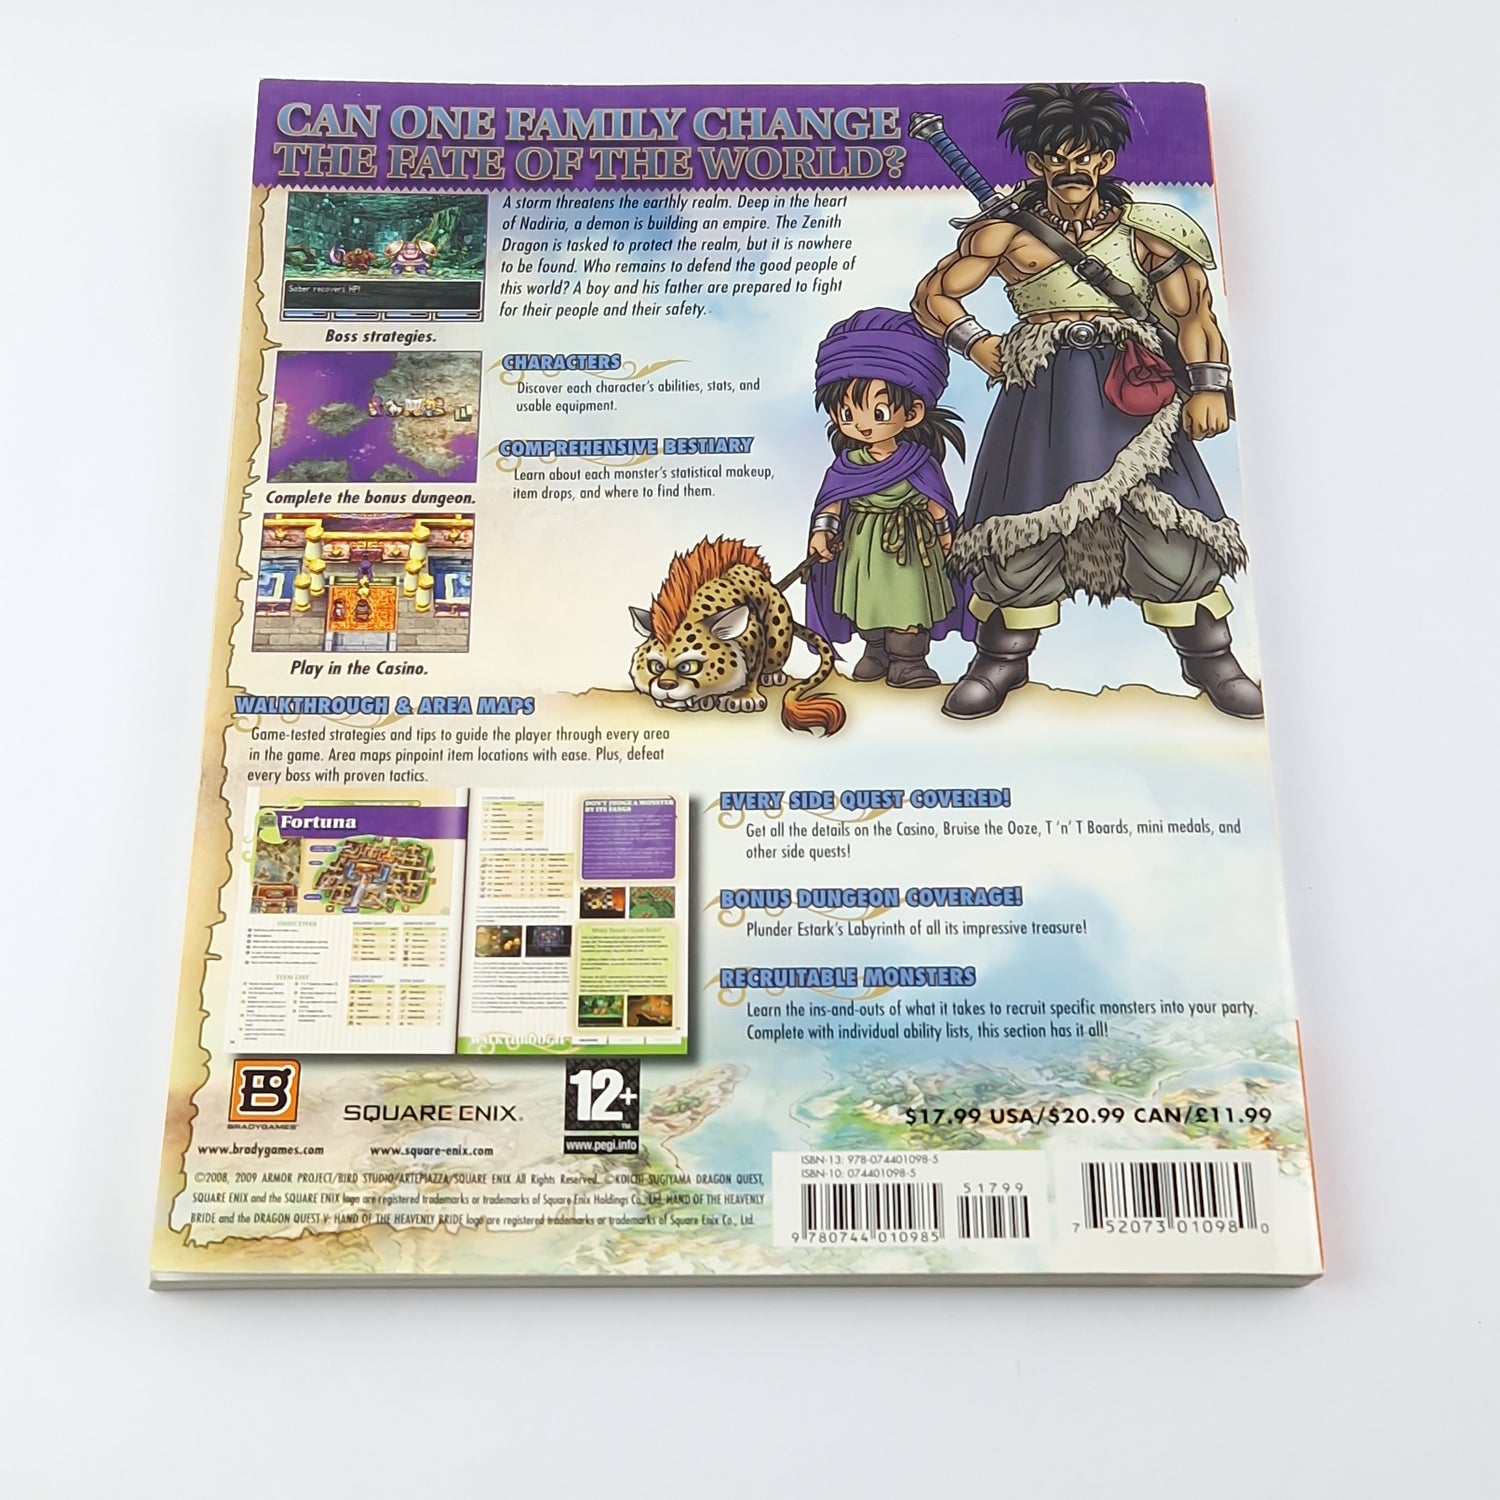 Nintendo DS Spiel : Dragon Quest Die Hand der Himmelsbraut + Bradygames Guide